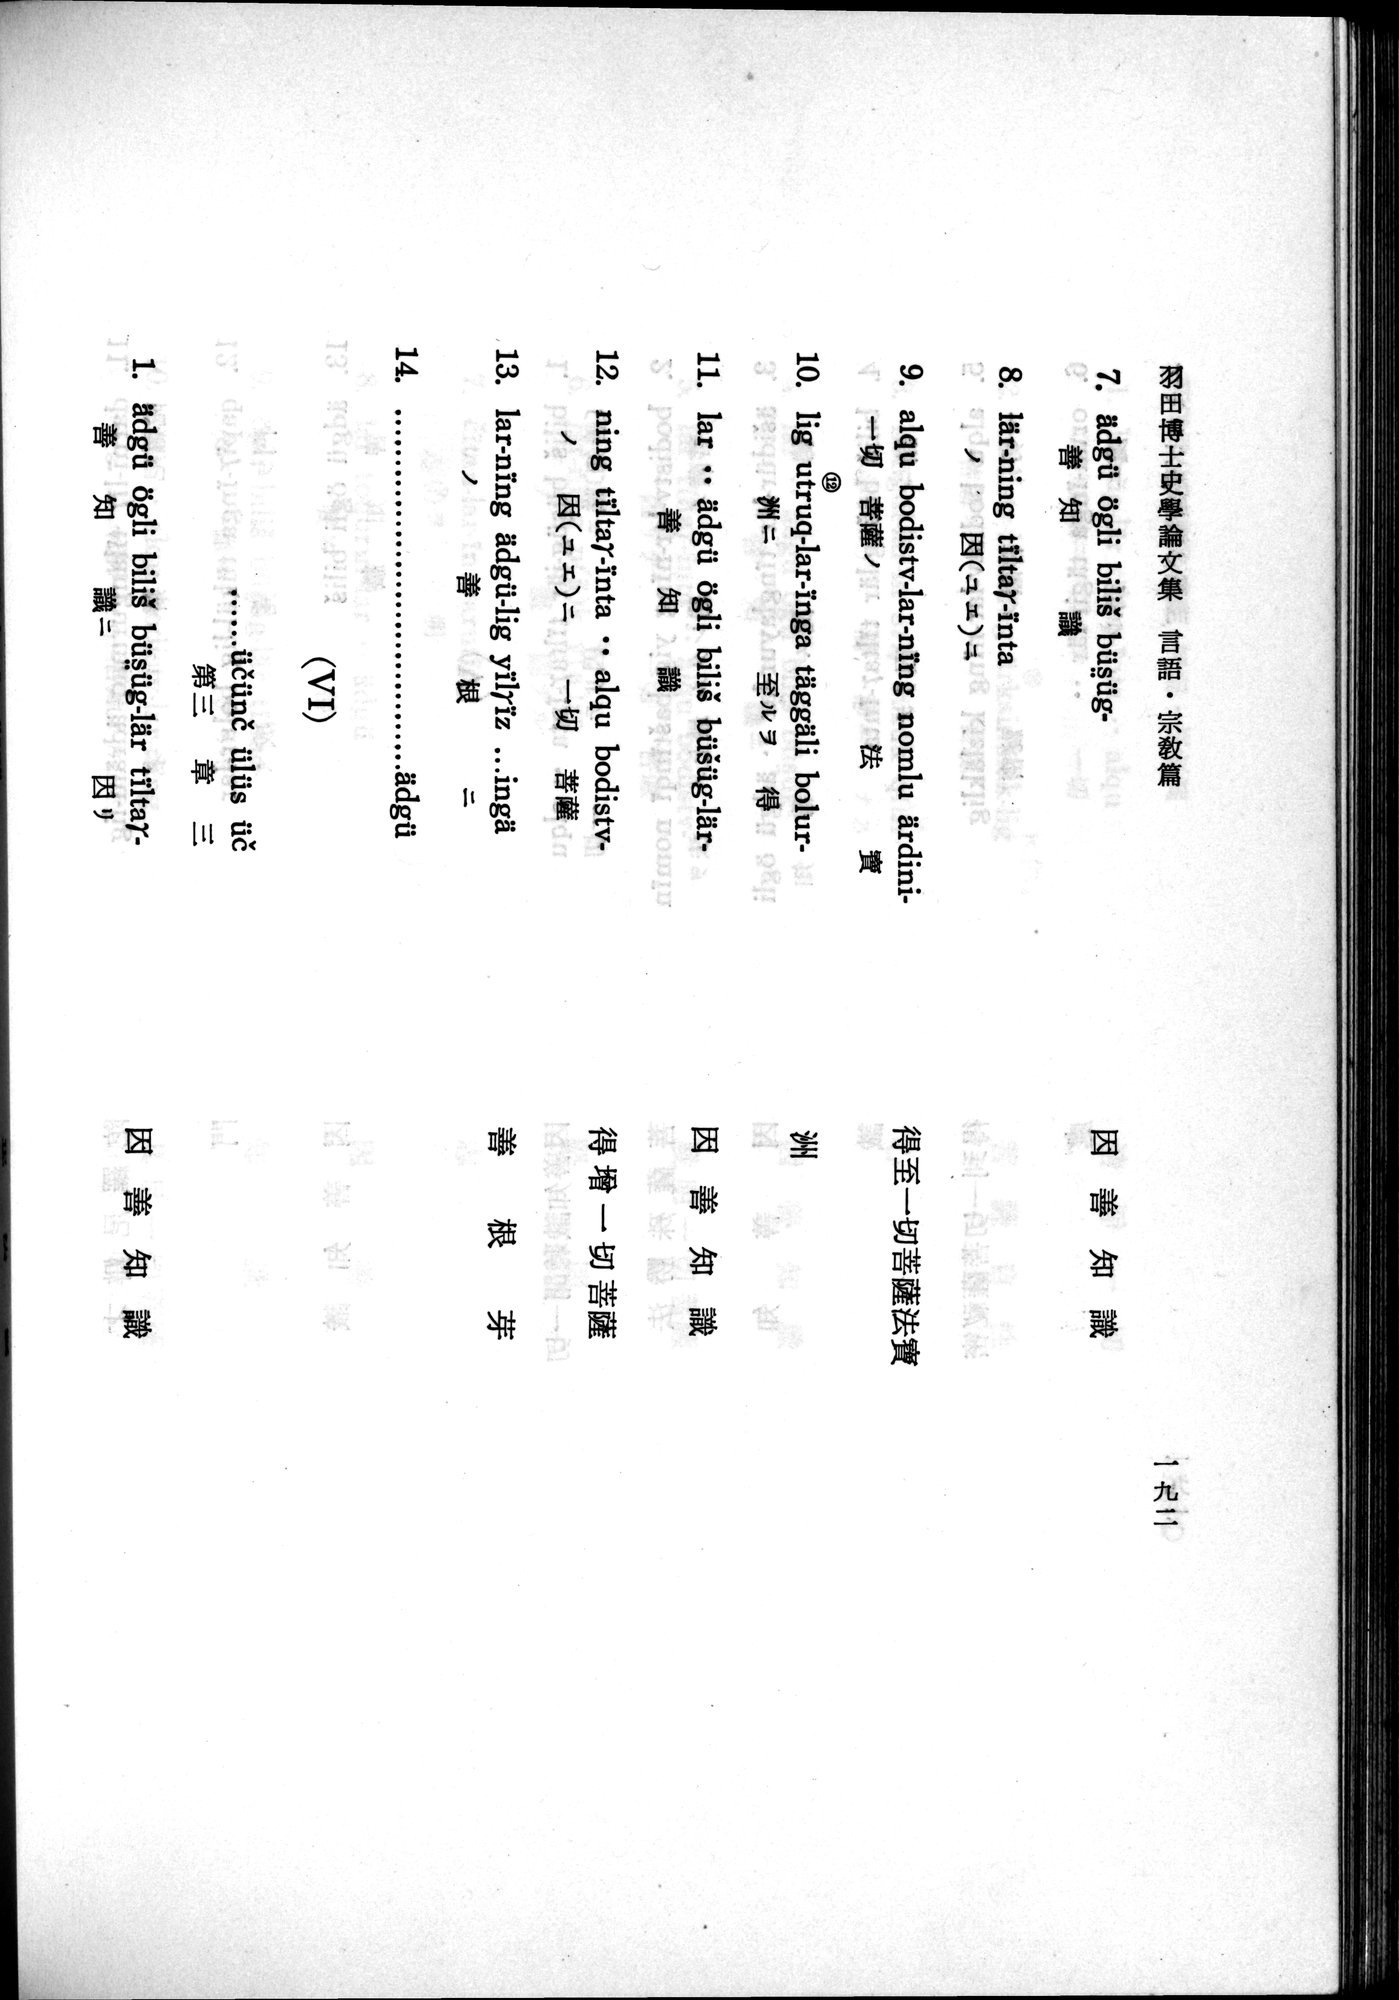 羽田博士史学論文集 : vol.2 / 254 ページ（白黒高解像度画像）